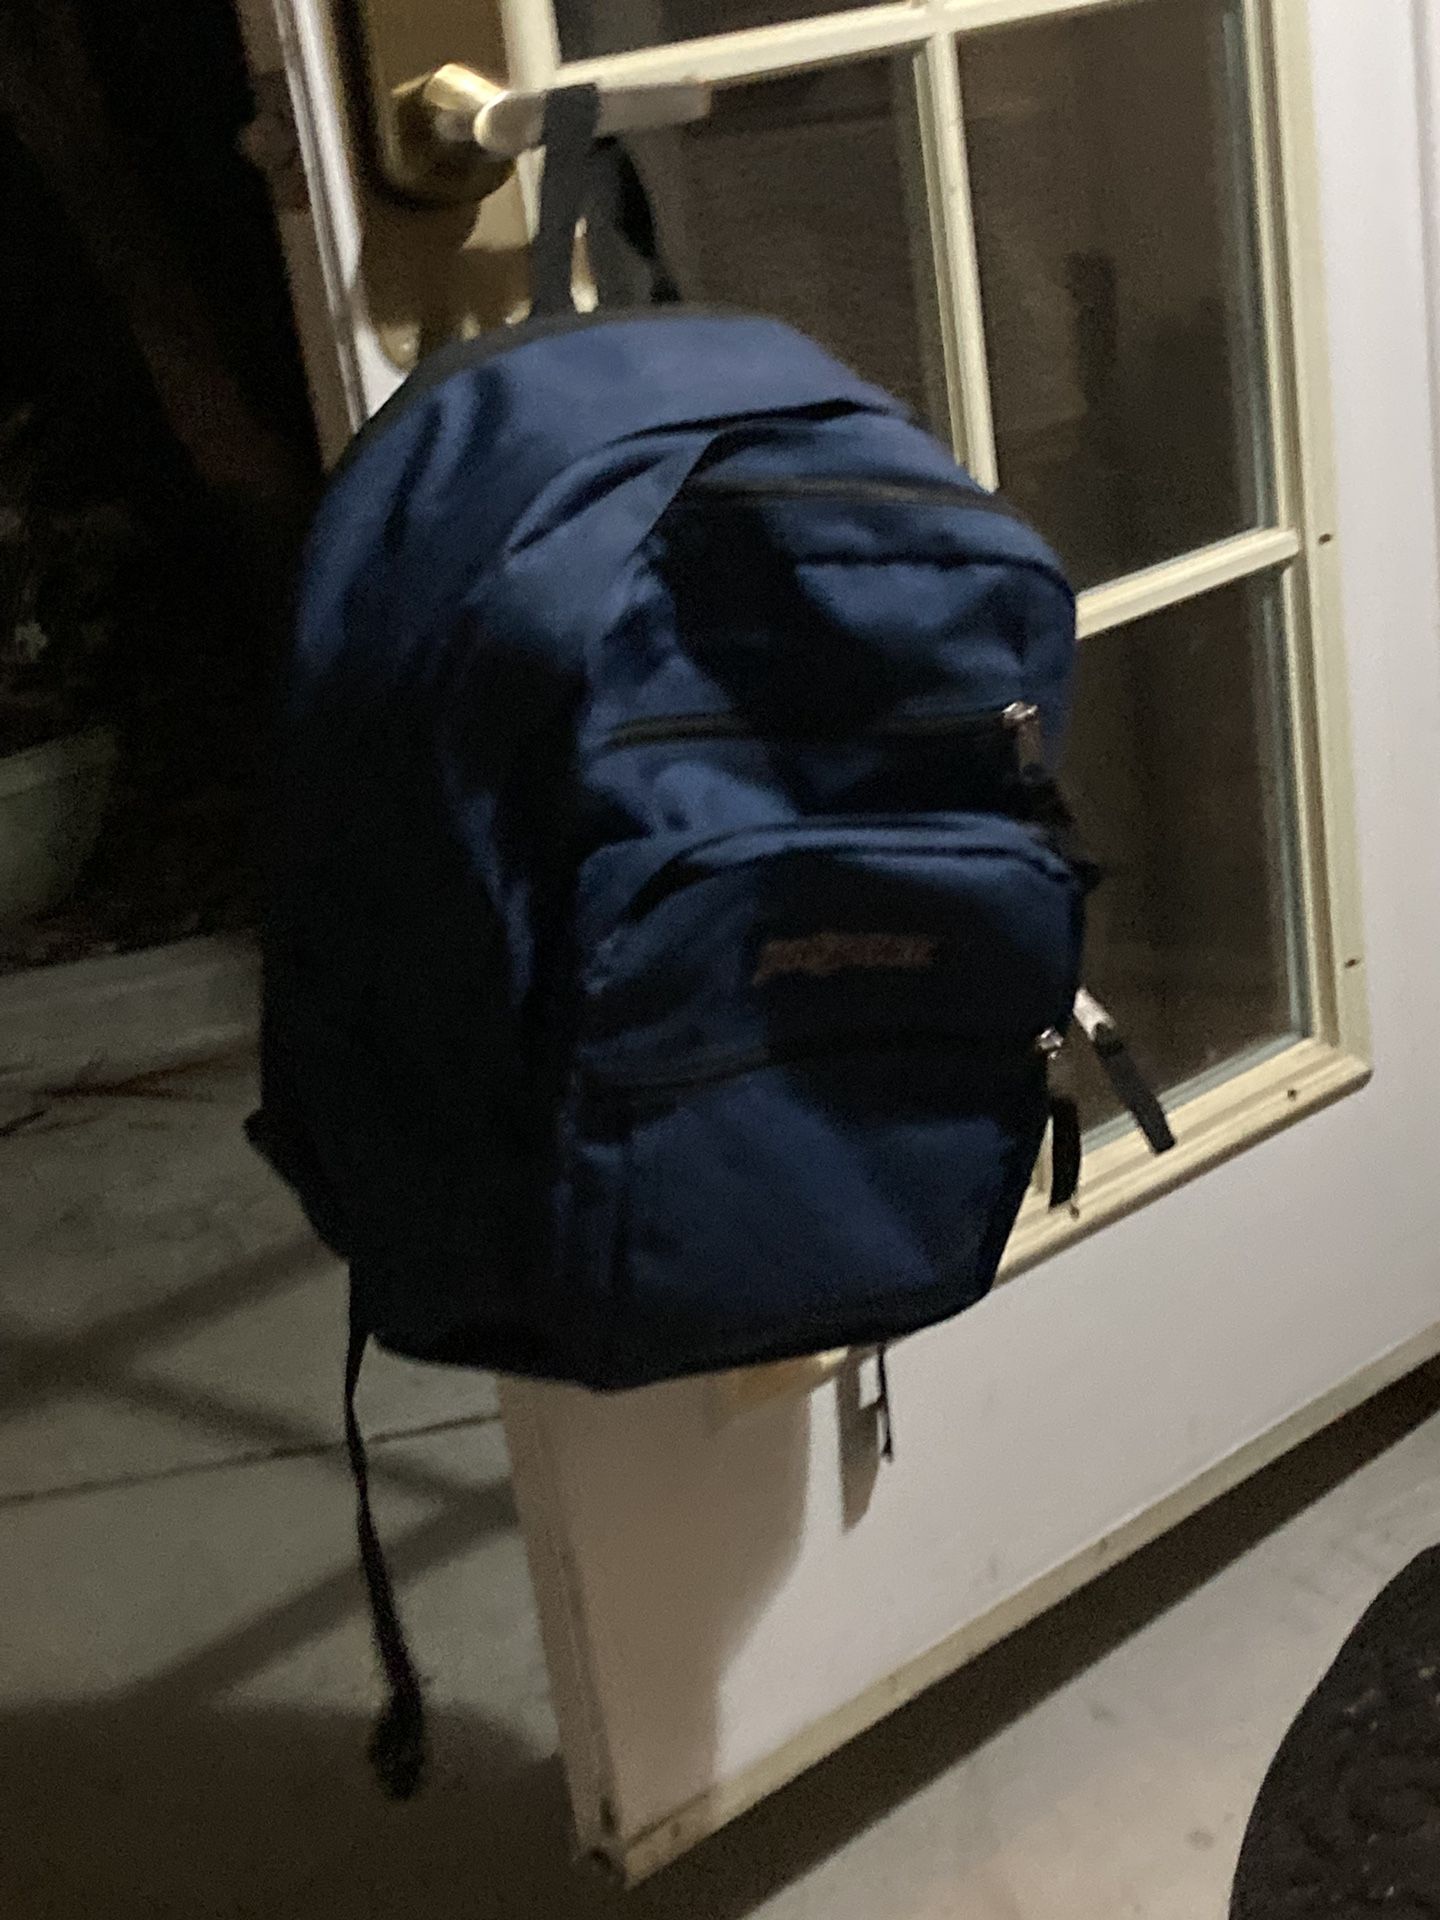 Jansport Backpack (Navy Blue)